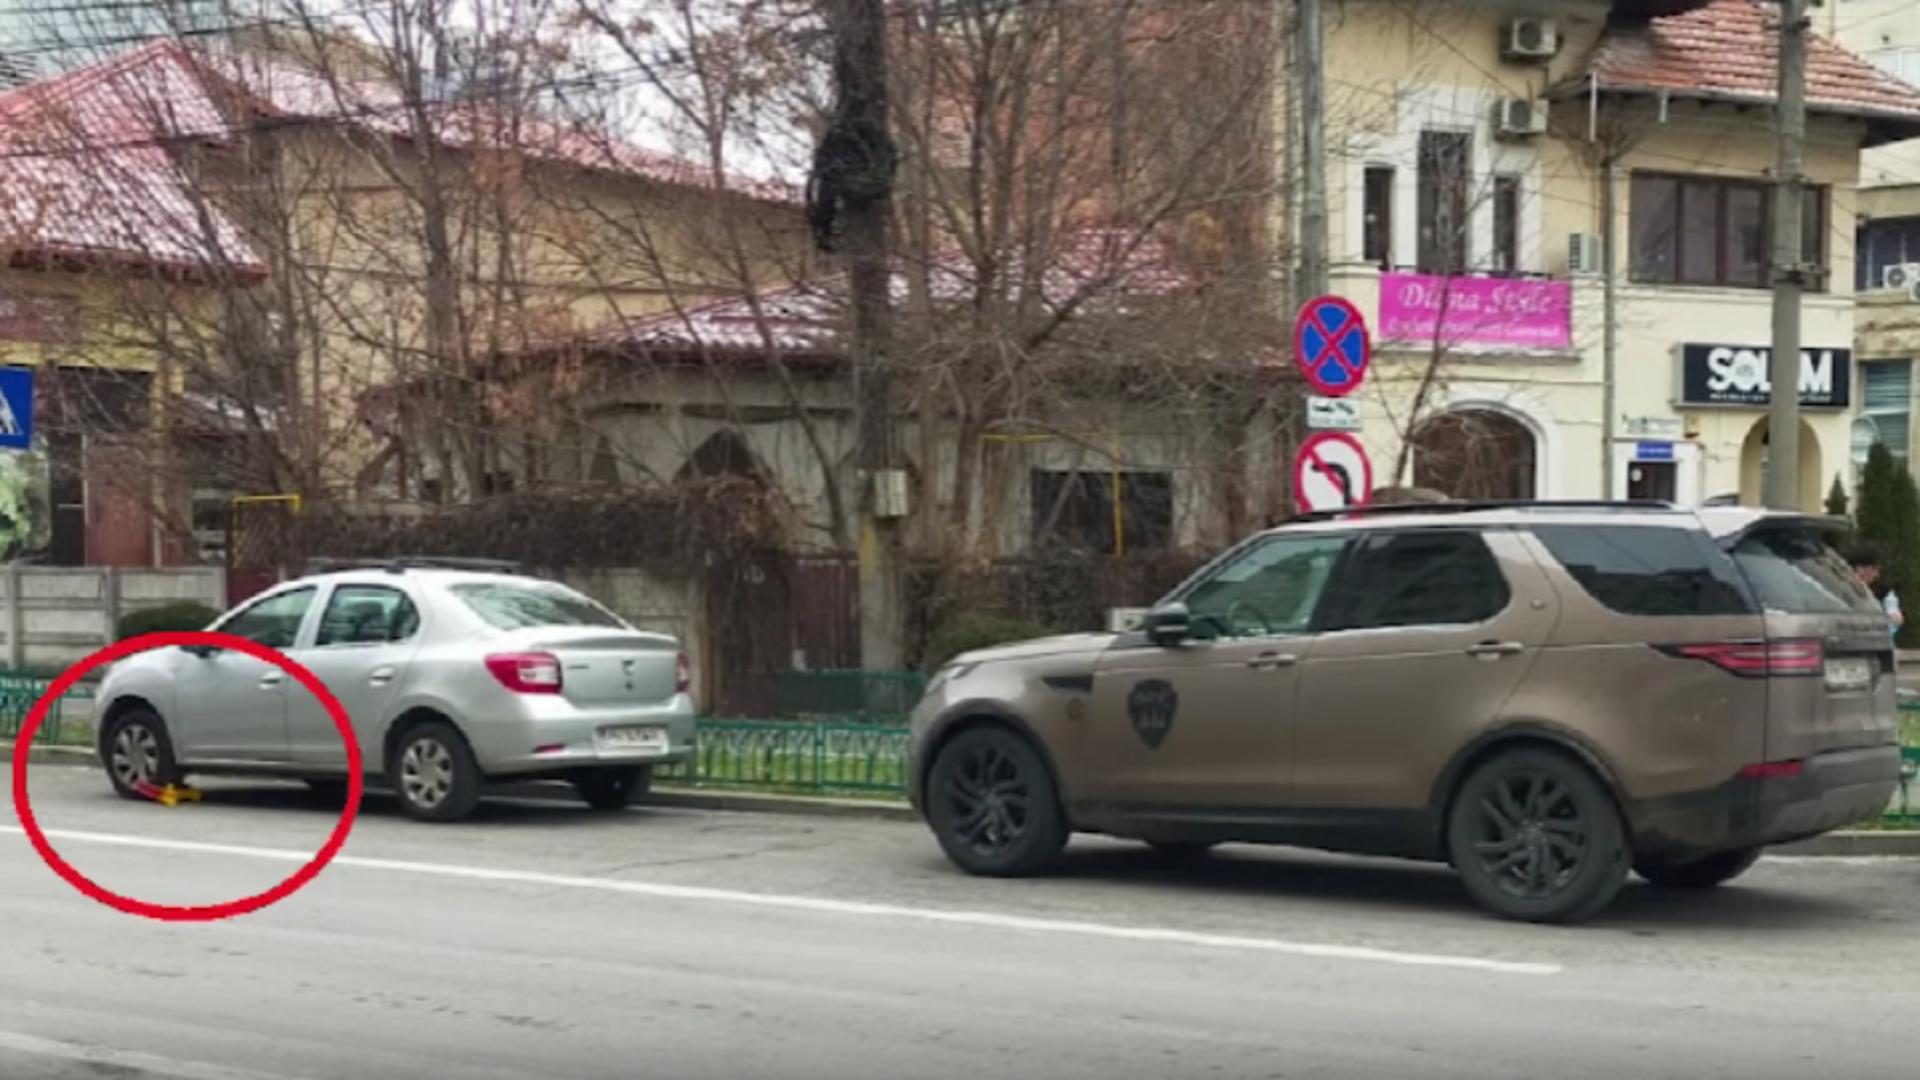 Două mașini, aceeași infracțiune, însă doar unul dintre șoferi este taxat / Captură Pbservatorul Prahovean